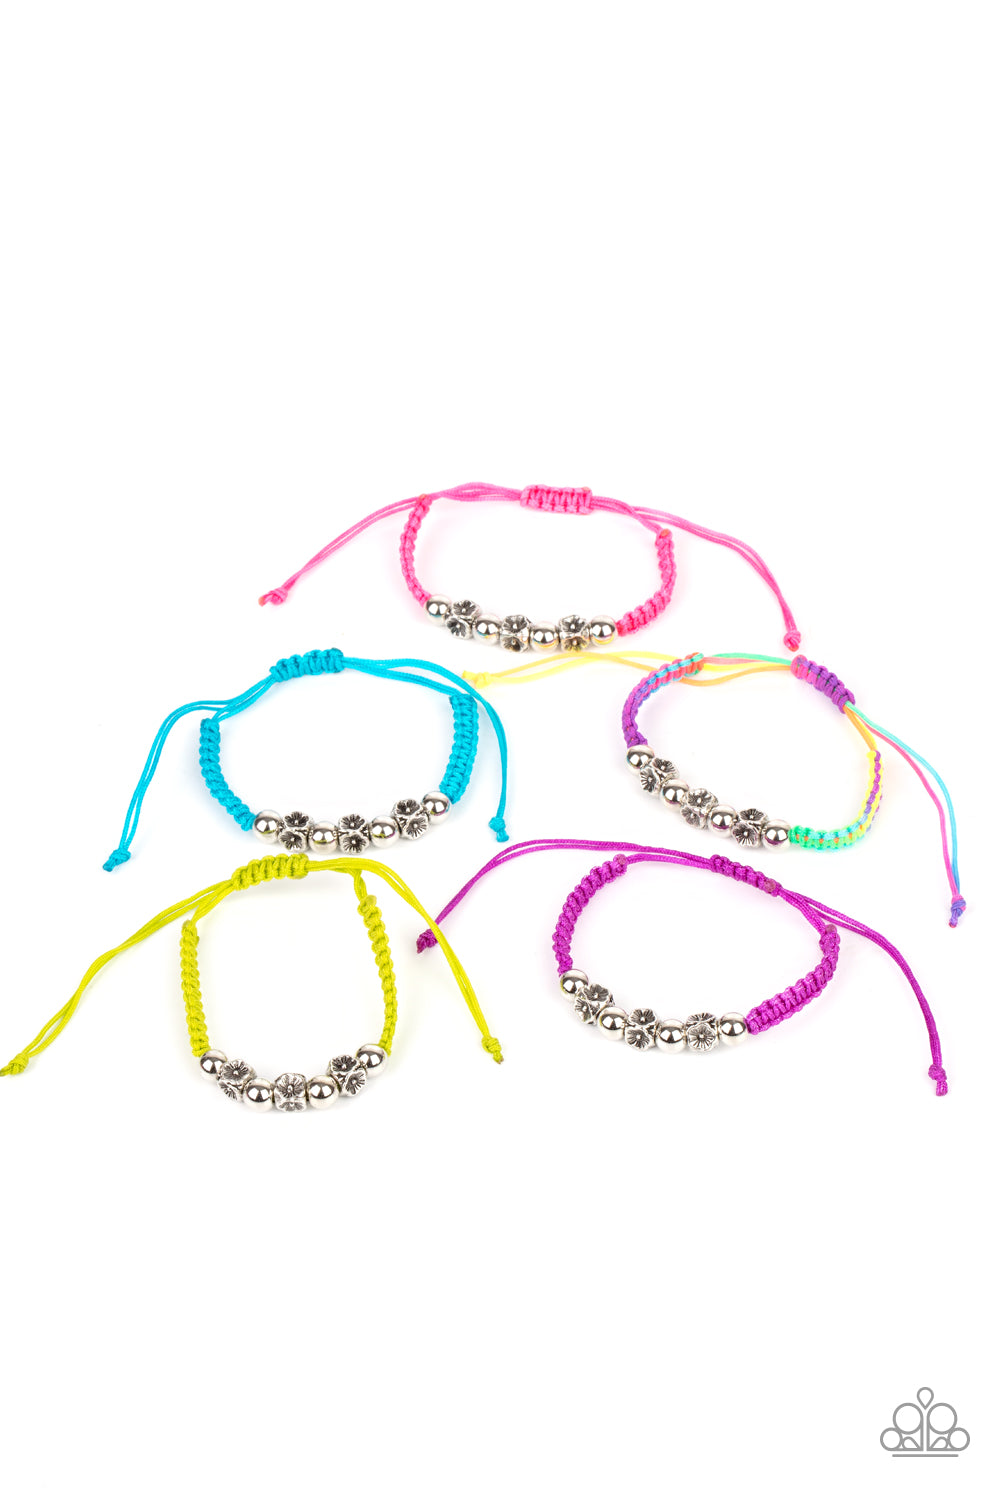 starlet-shimmer-bracelet-kit-3926-p9ss-mtxx-272xx